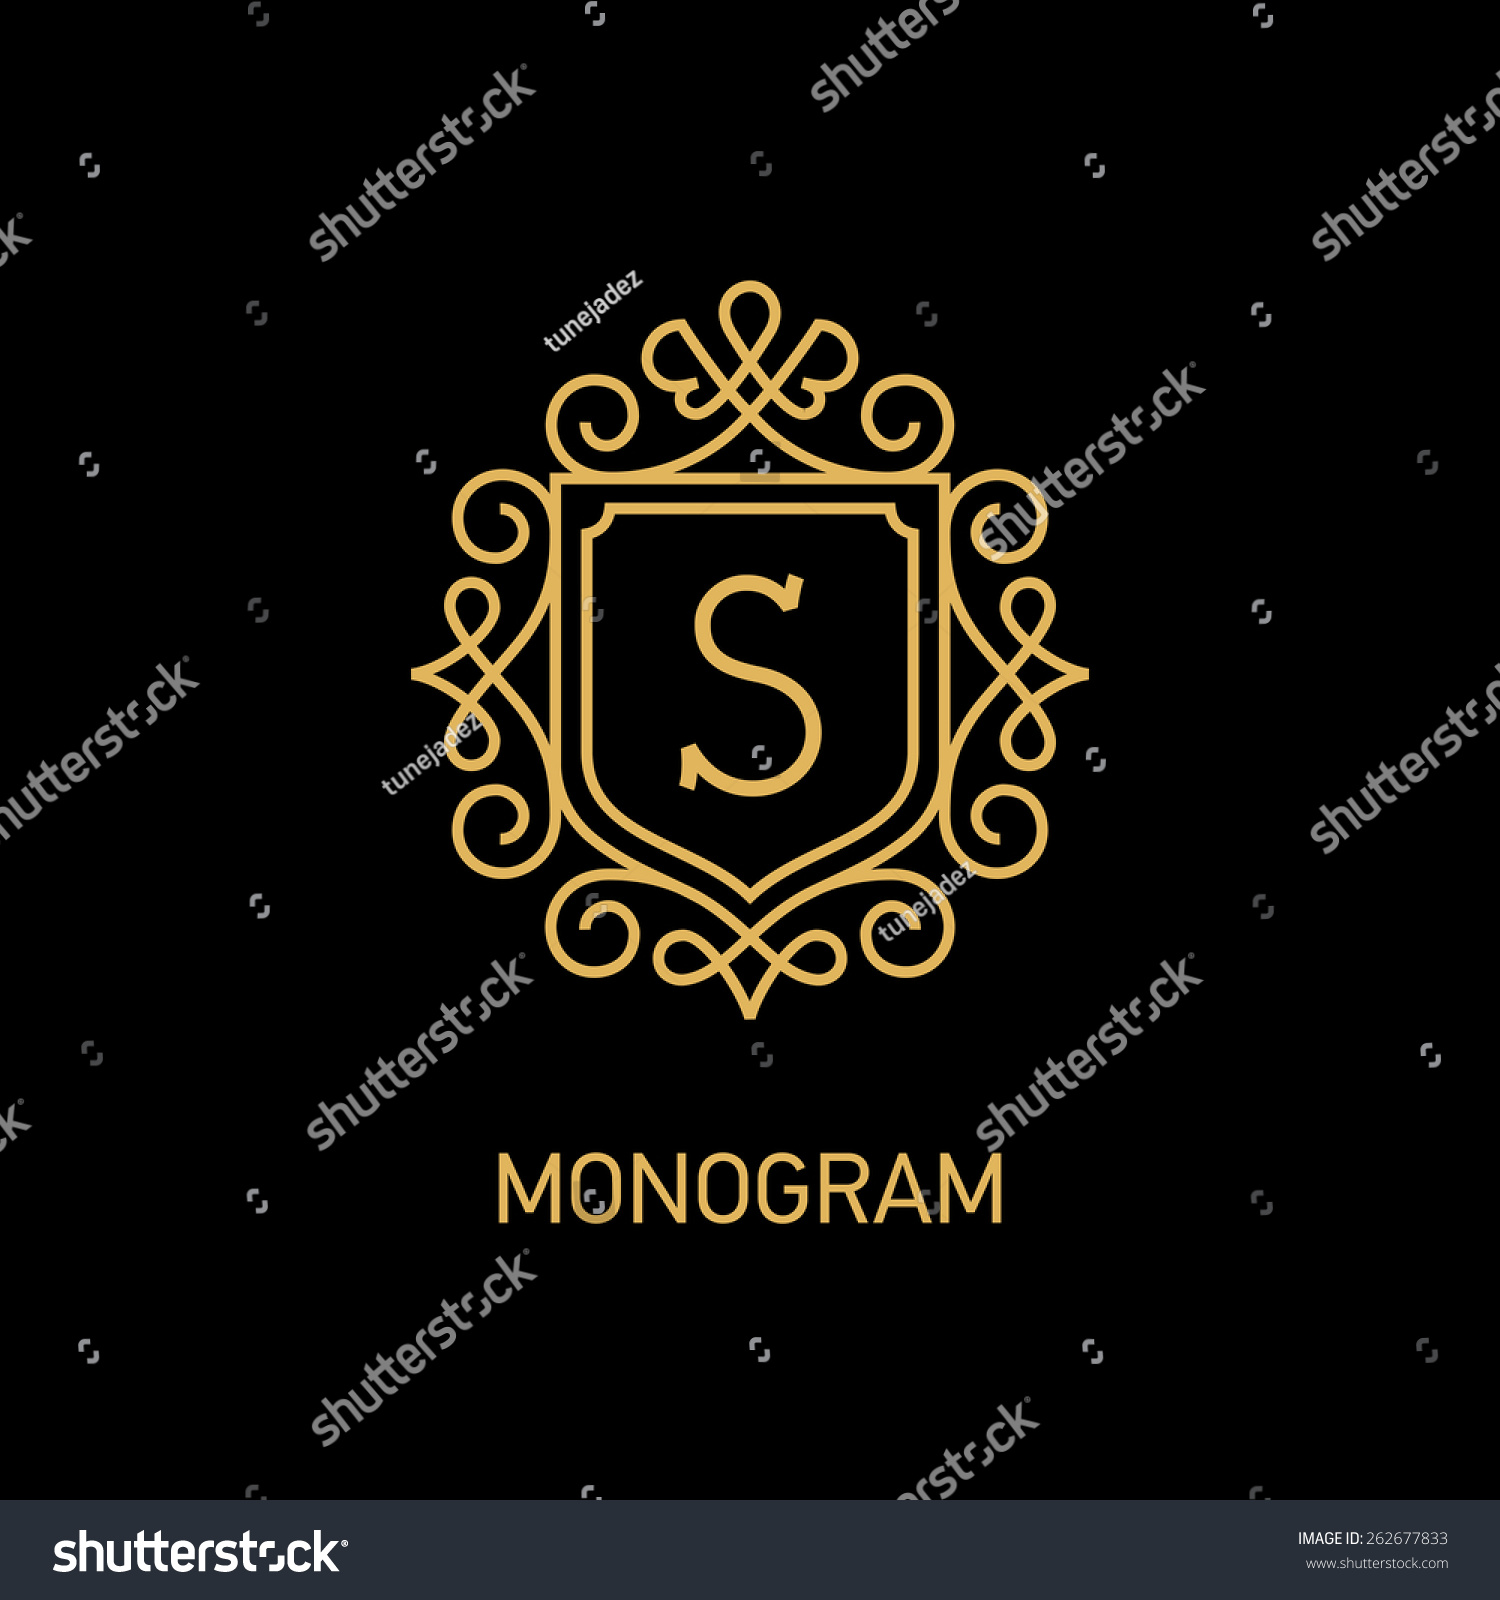 Elegant Monogram Design Template Letter S Stock Vector 262677833 ...